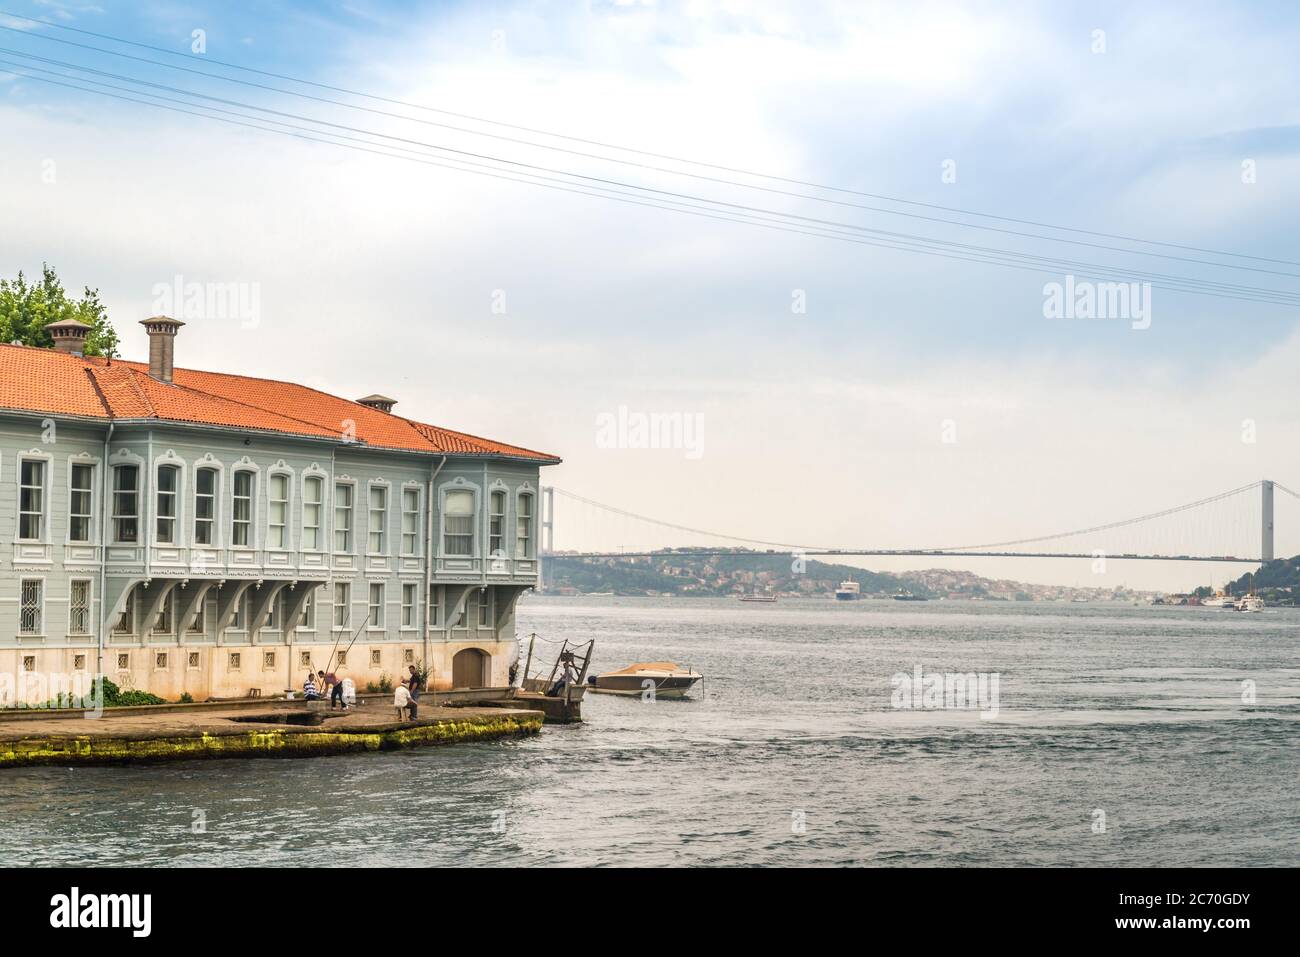 Una scena a Istanbul, in Turchia, che mostra un gruppo di uomini che pescano dalla riva, e un moderno ponte che attraversa lo stretto del Bosforo sullo sfondo Foto Stock